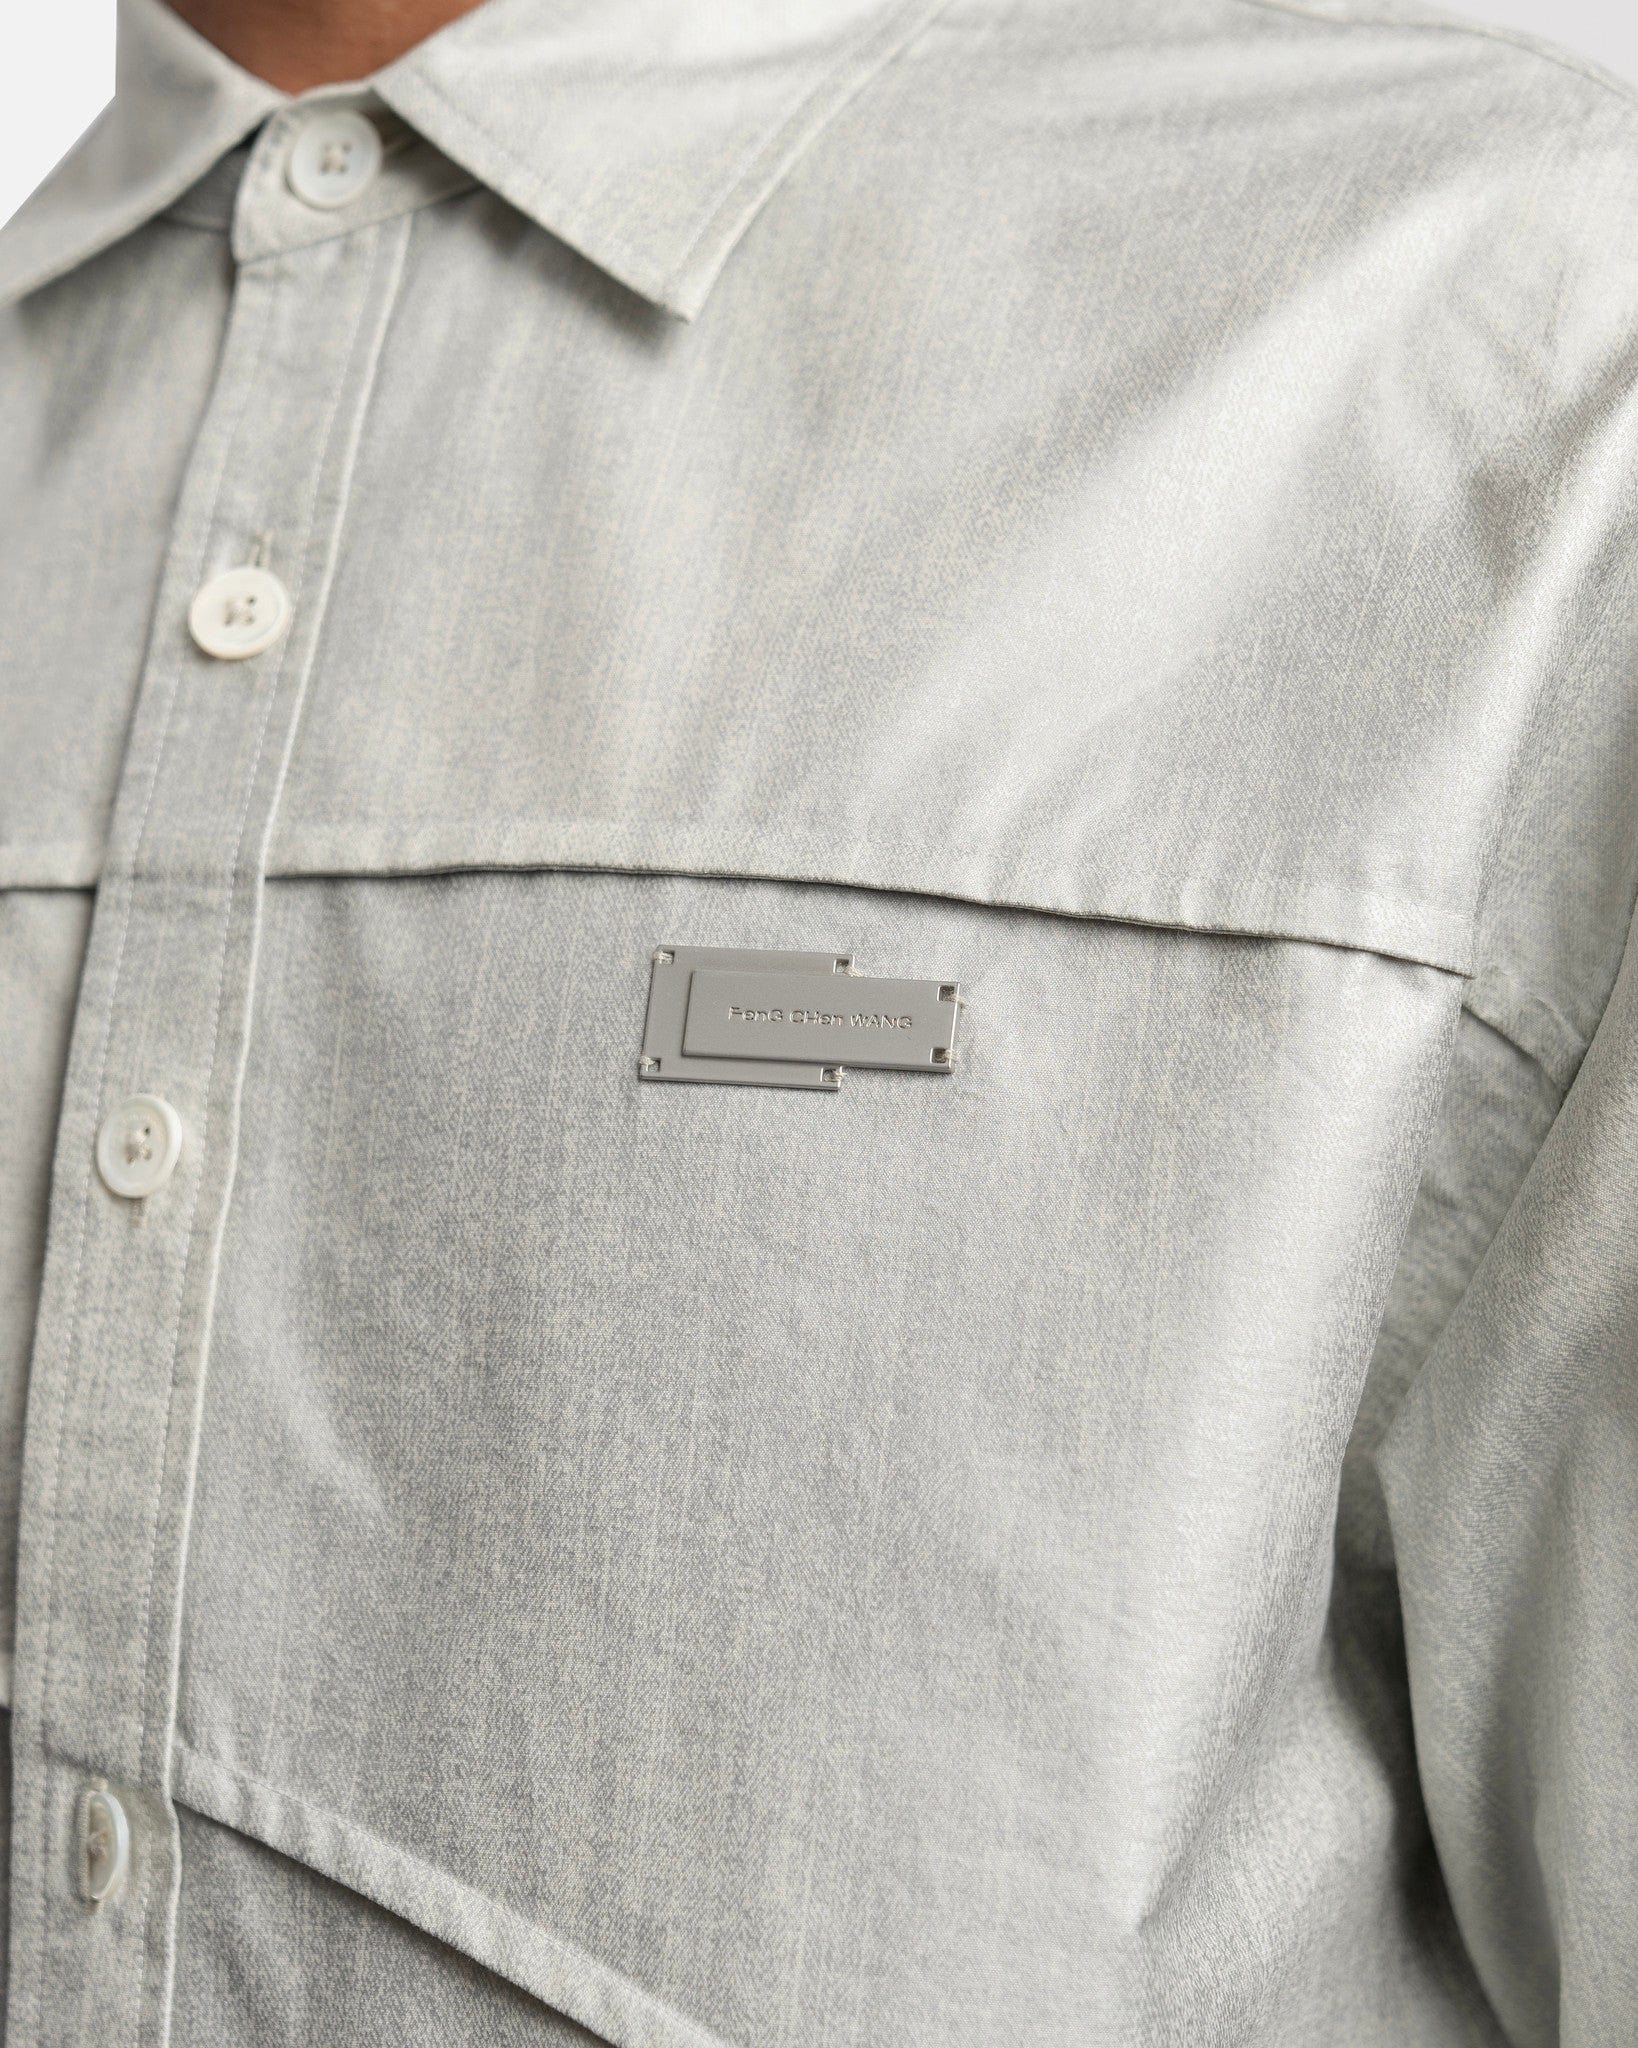 Feng Chen Wang Men's Shirts Paneled Long Sleeve Shirt in Light Grey